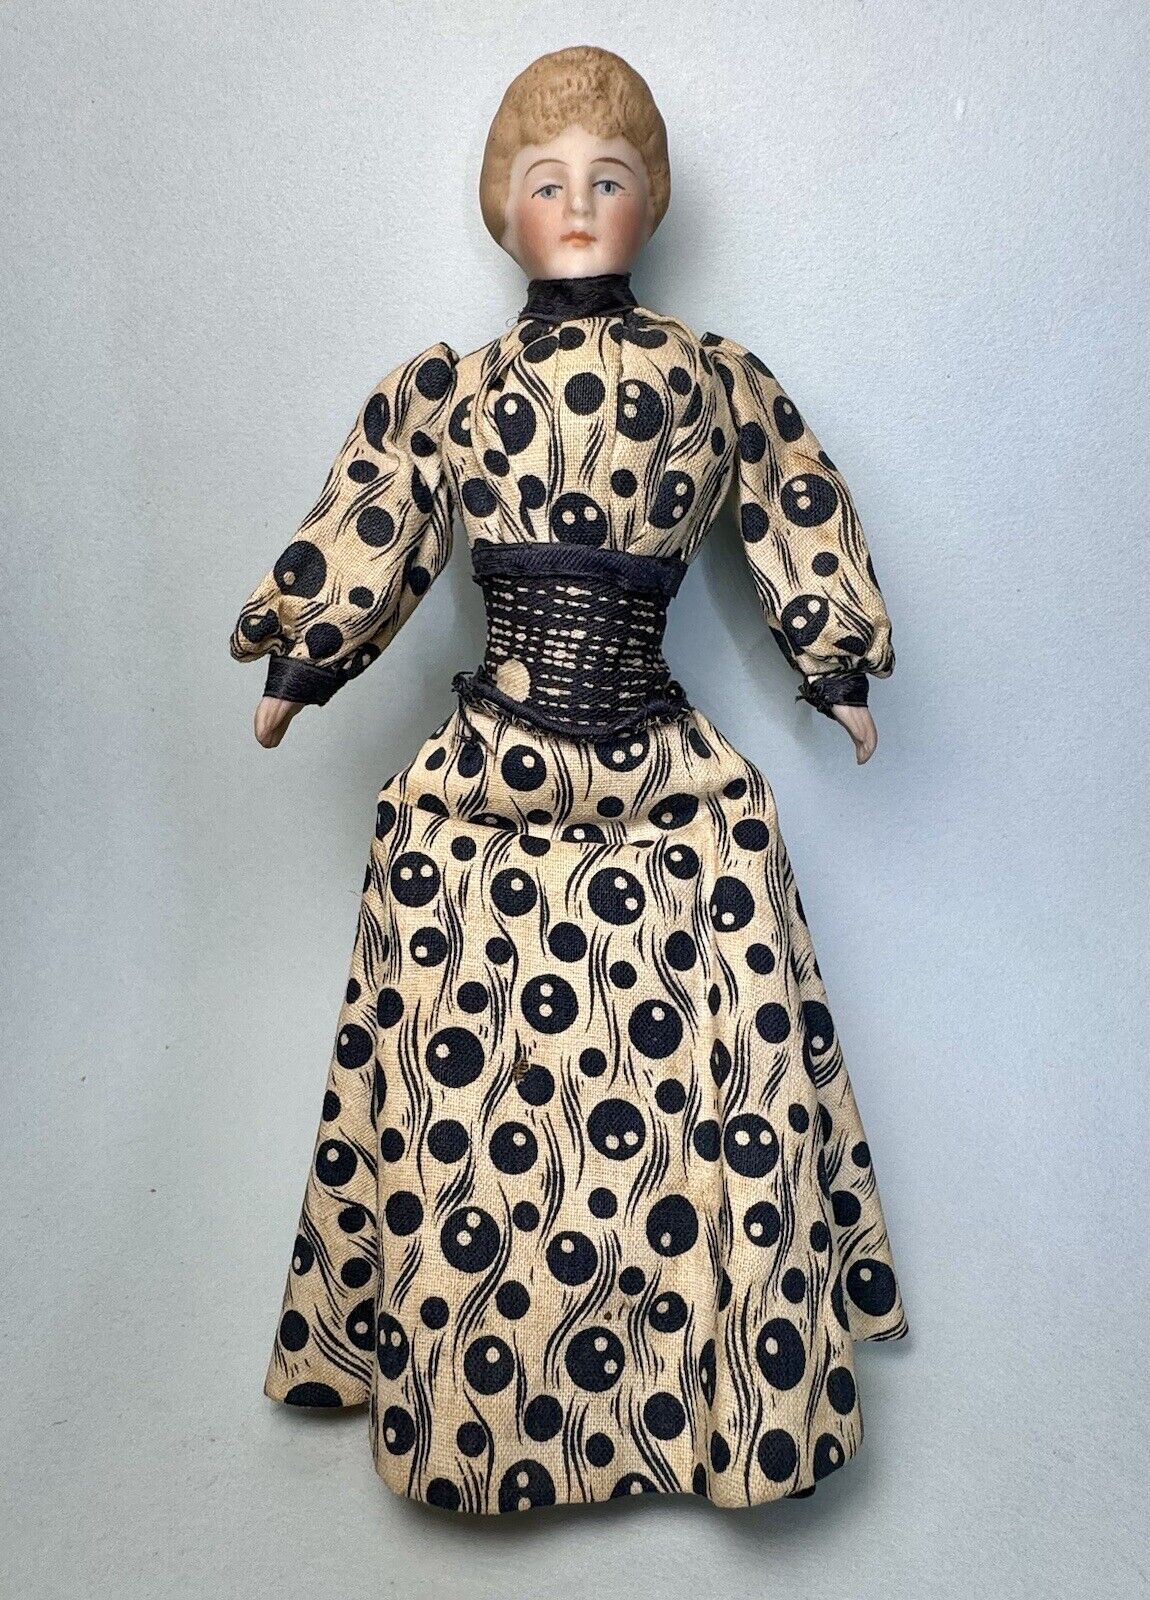 Antique German Dollhouse Doll Bisque Lady All Original 6 1/2” Edwardian Era